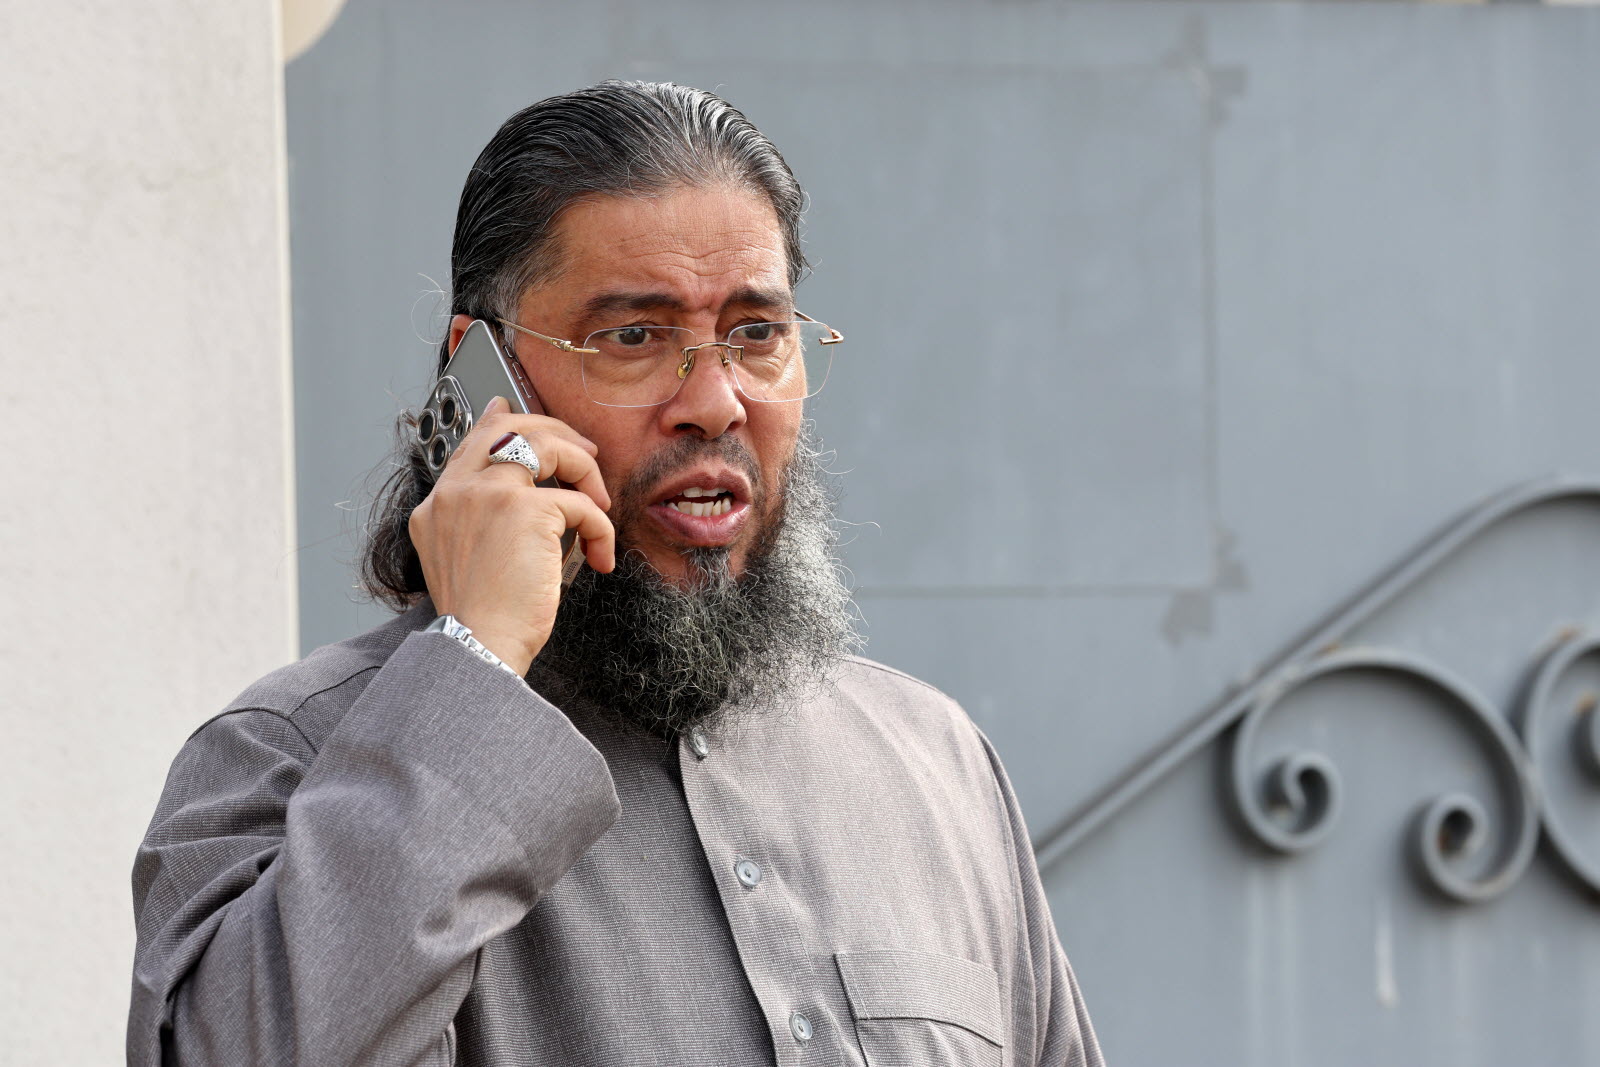 France expels 'radical' Tunisian imam